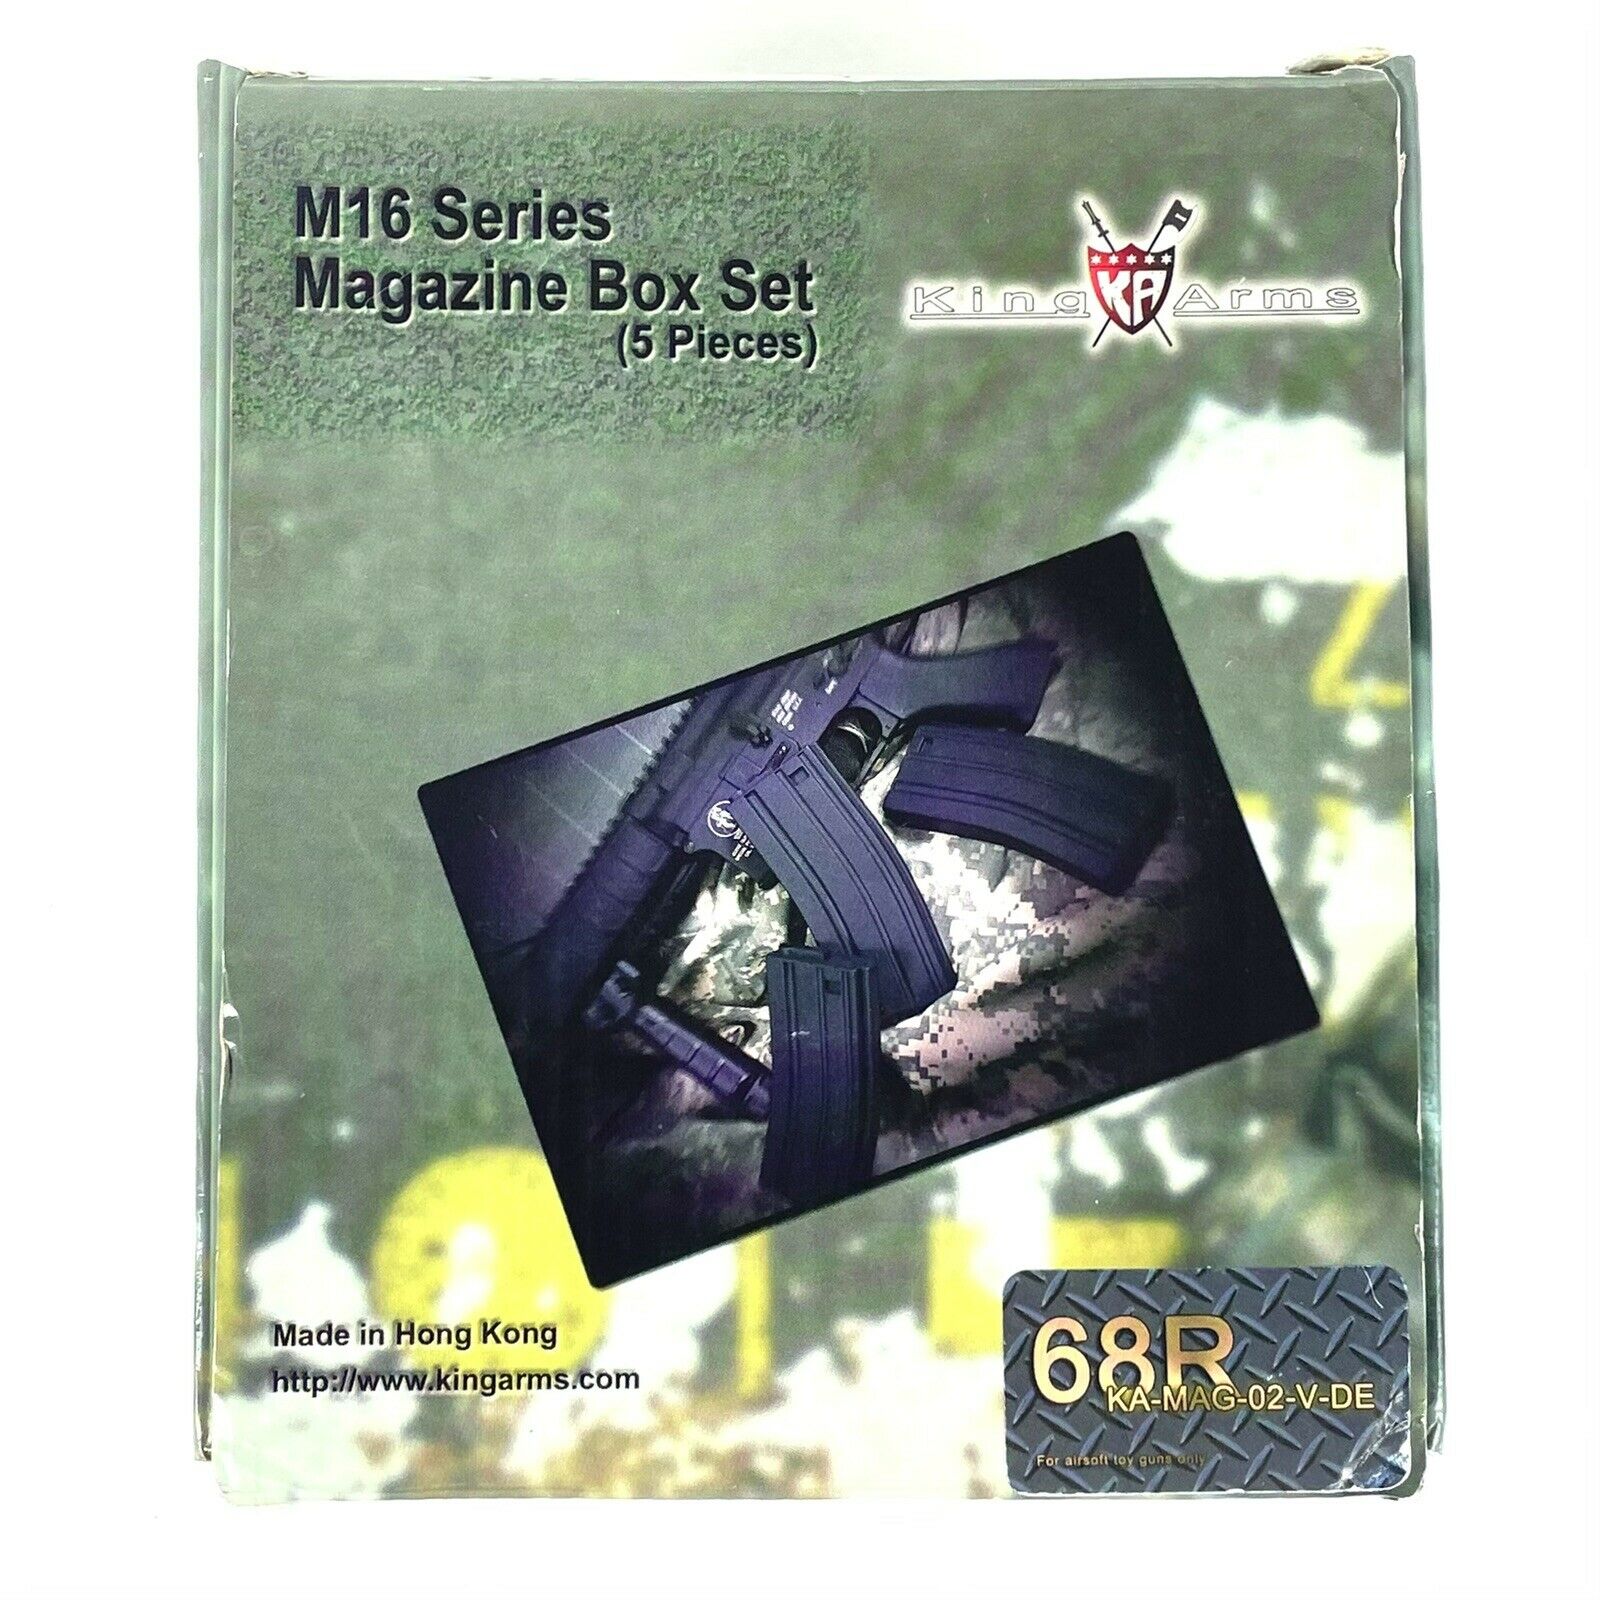 King Arms 68r Ak Style Magazine For M4/m16 Series (5pcs)